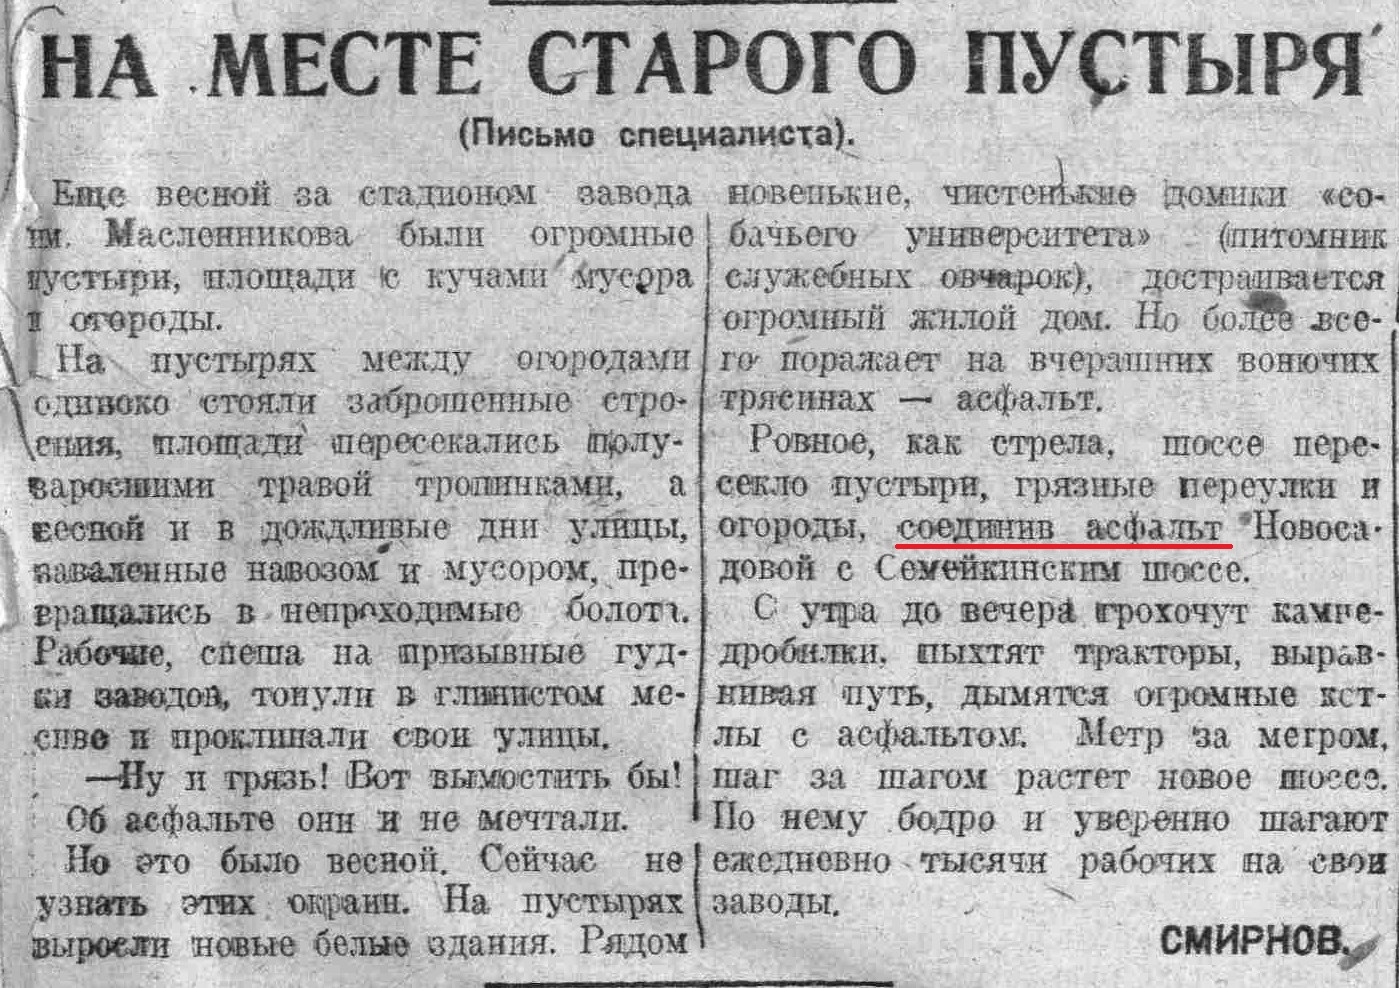 ФОТО-Масленникова-03-ВКа-1935-09-27-о создании пр. Маслен.